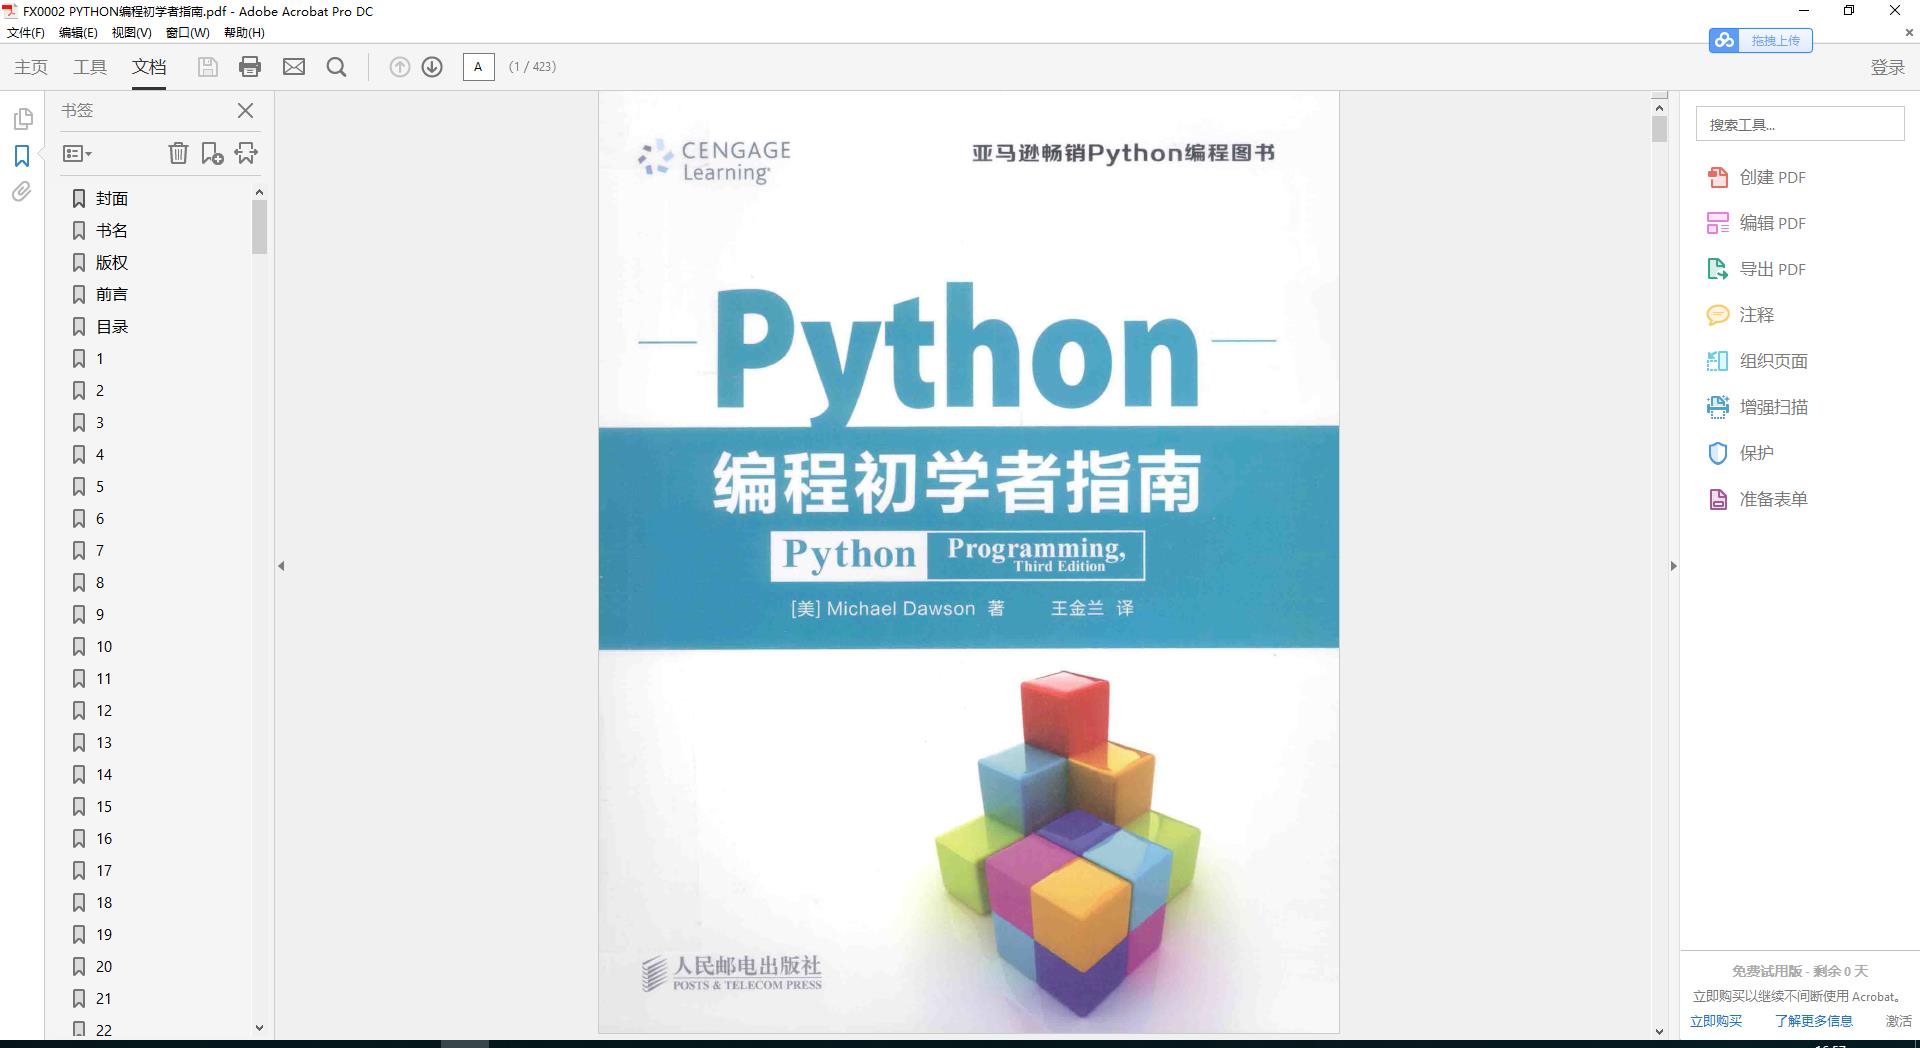 《PYTHON编程初学者指南》pdf - 文章图片